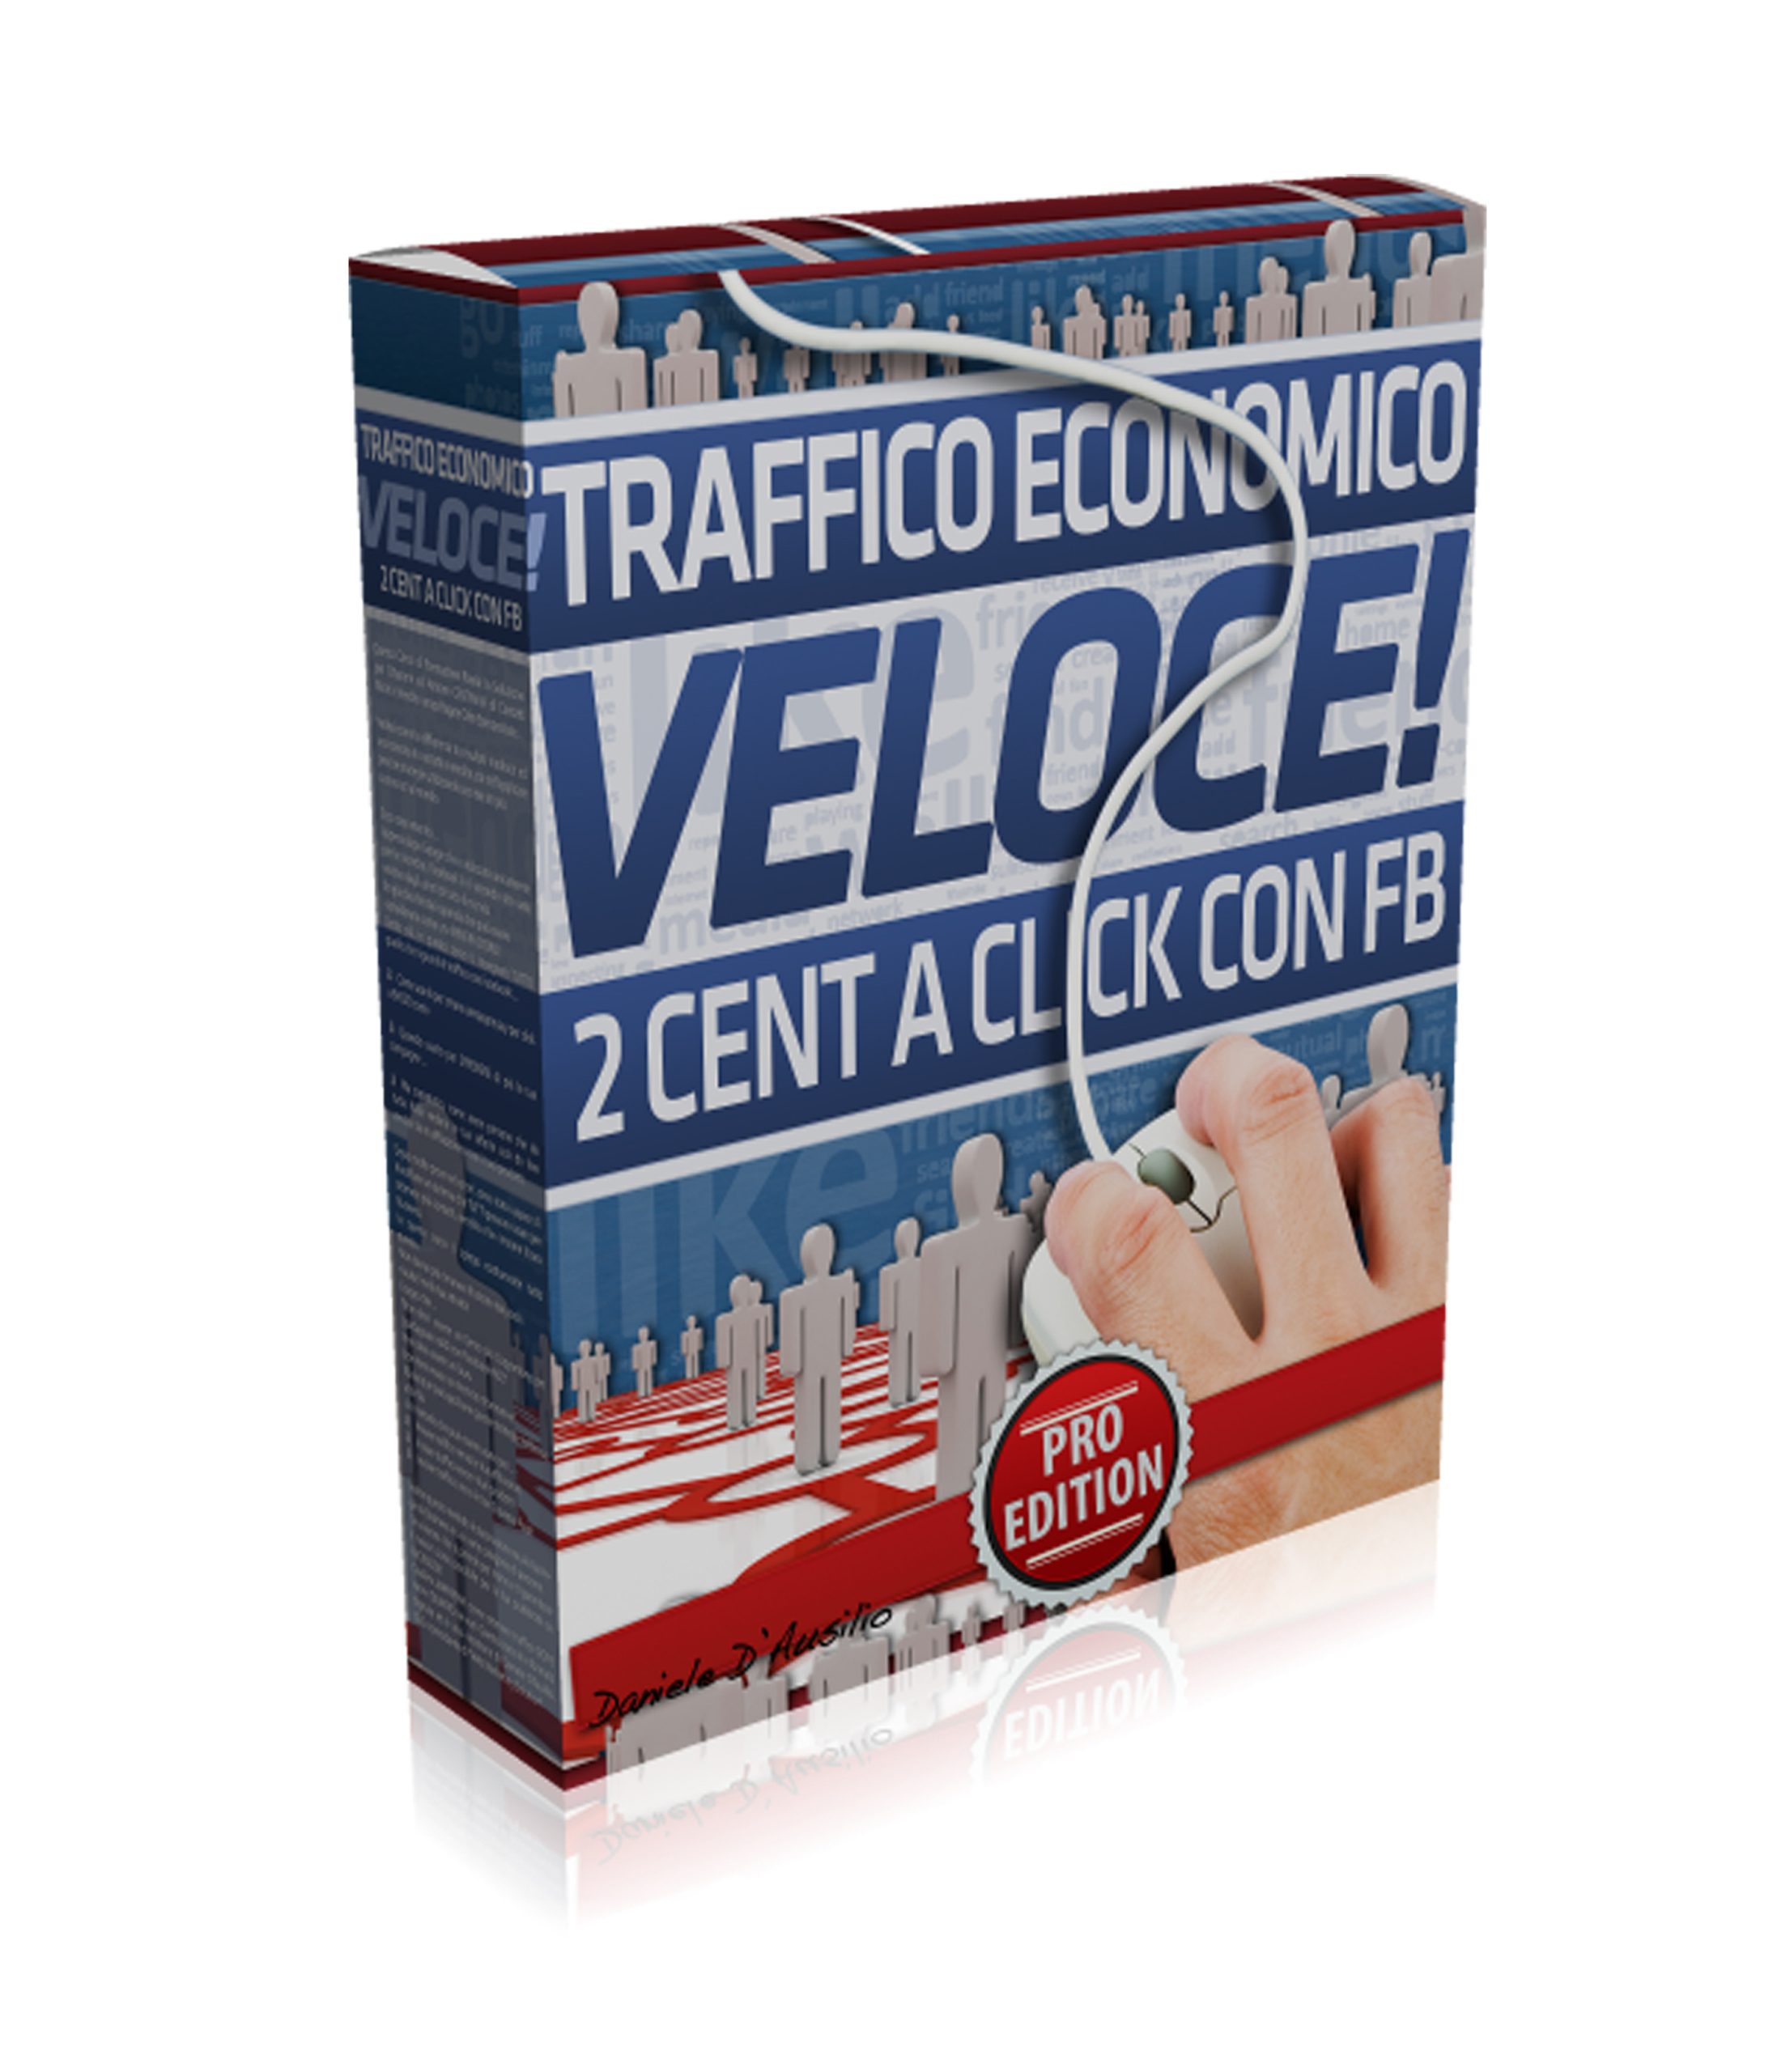 Traffico Economico Pro Edition